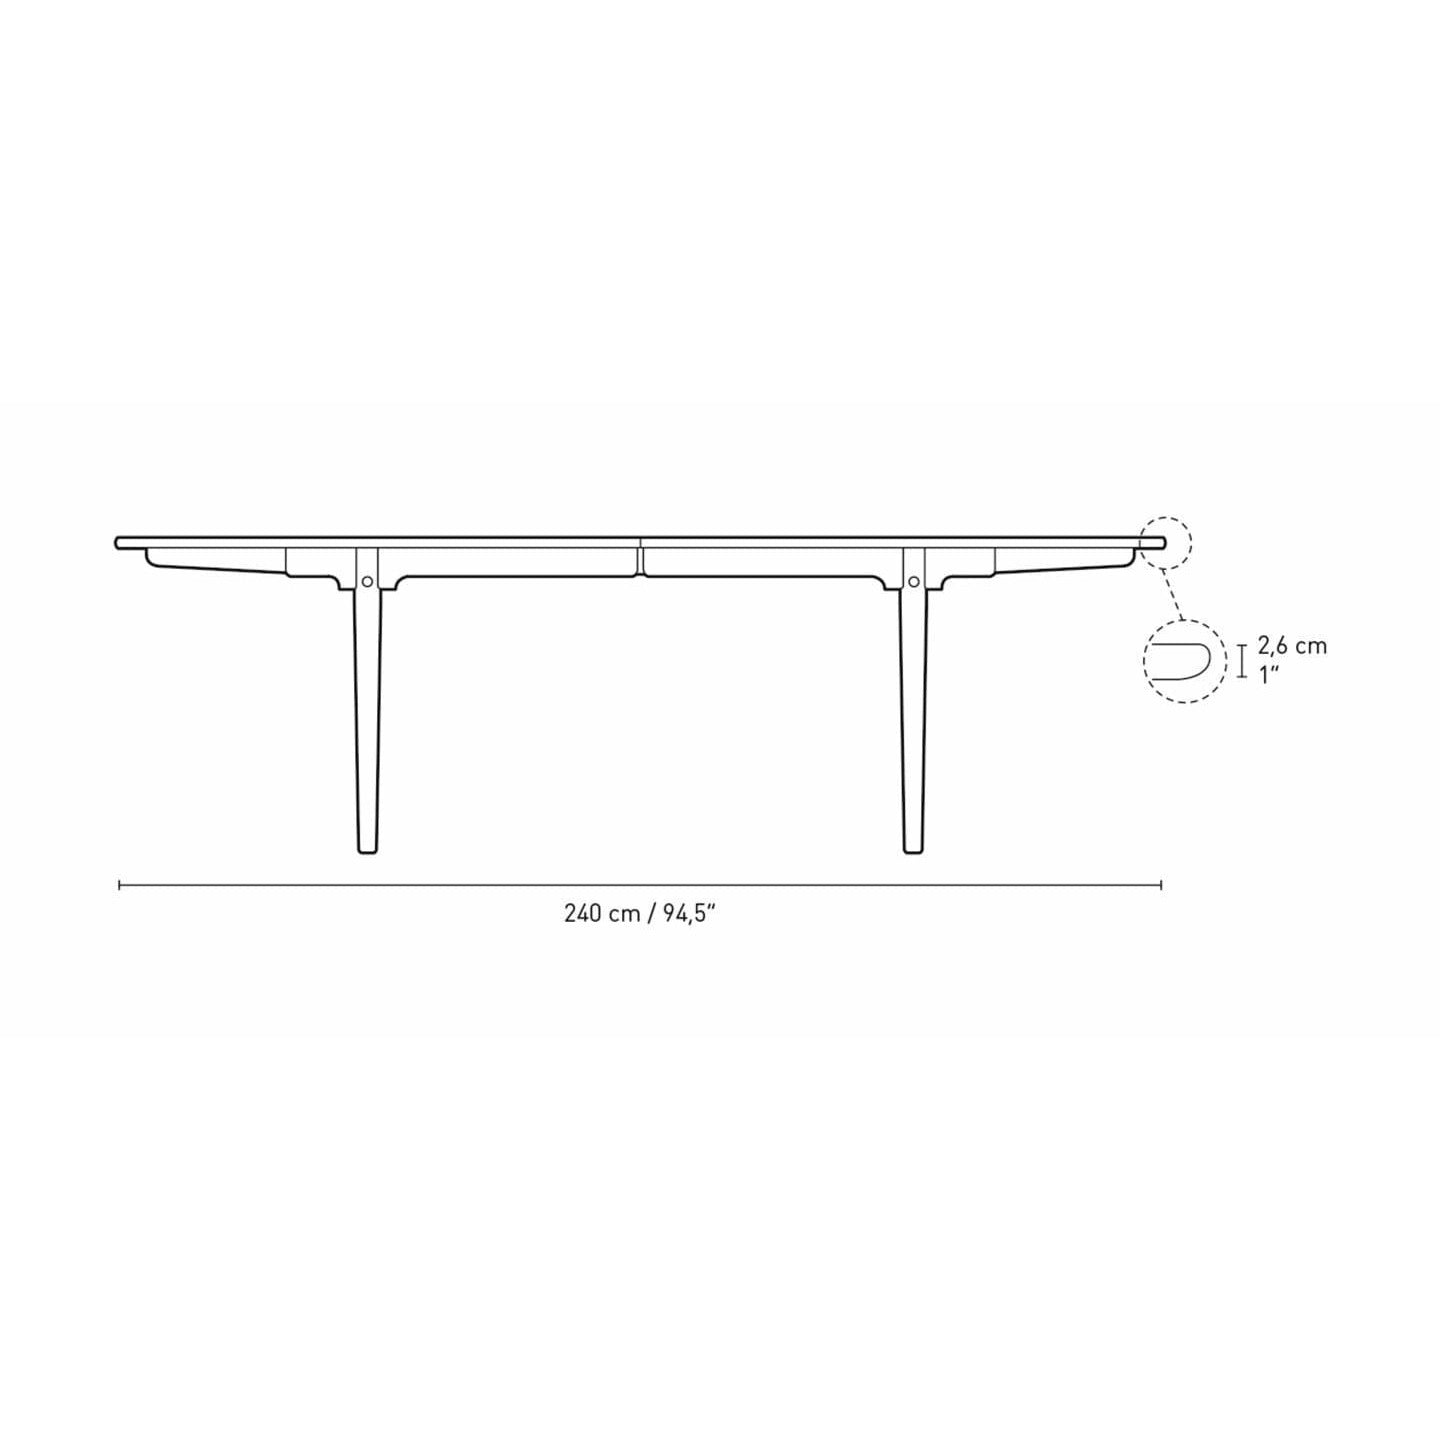 Jídelní stůl Carl Hansen CH339 navržený pro 2 vytahovací talíře, dubový naolejovaný